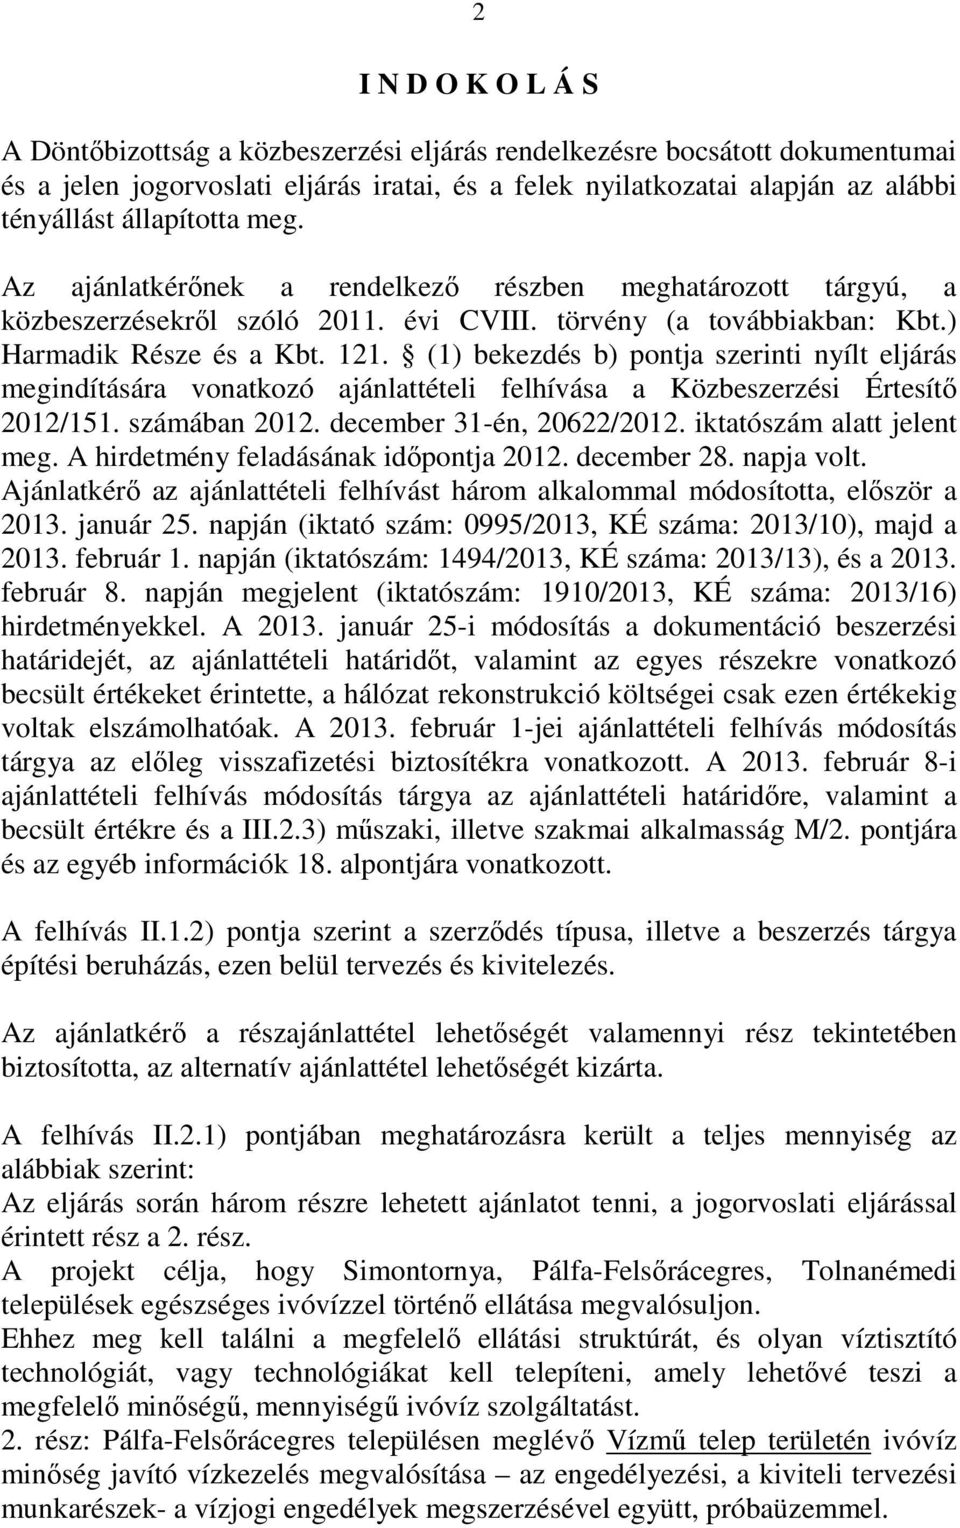 (1) bekezdés b) pontja szerinti nyílt eljárás megindítására vonatkozó ajánlattételi felhívása a Közbeszerzési Értesítı 2012/151. számában 2012. december 31-én, 20622/2012. iktatószám alatt jelent meg.